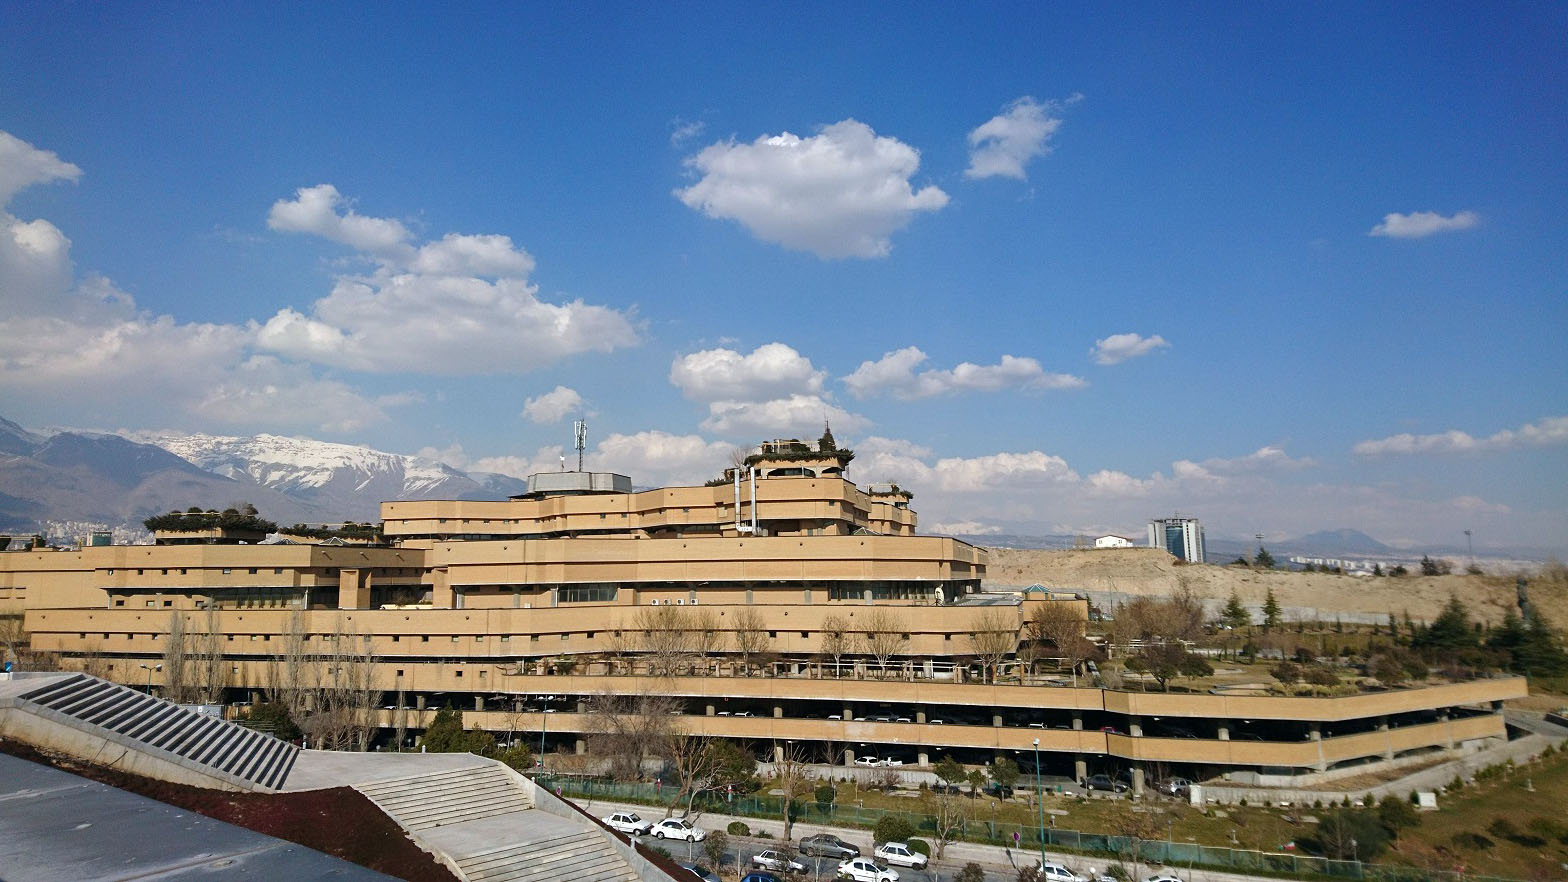 کتابخانه ملی ایران